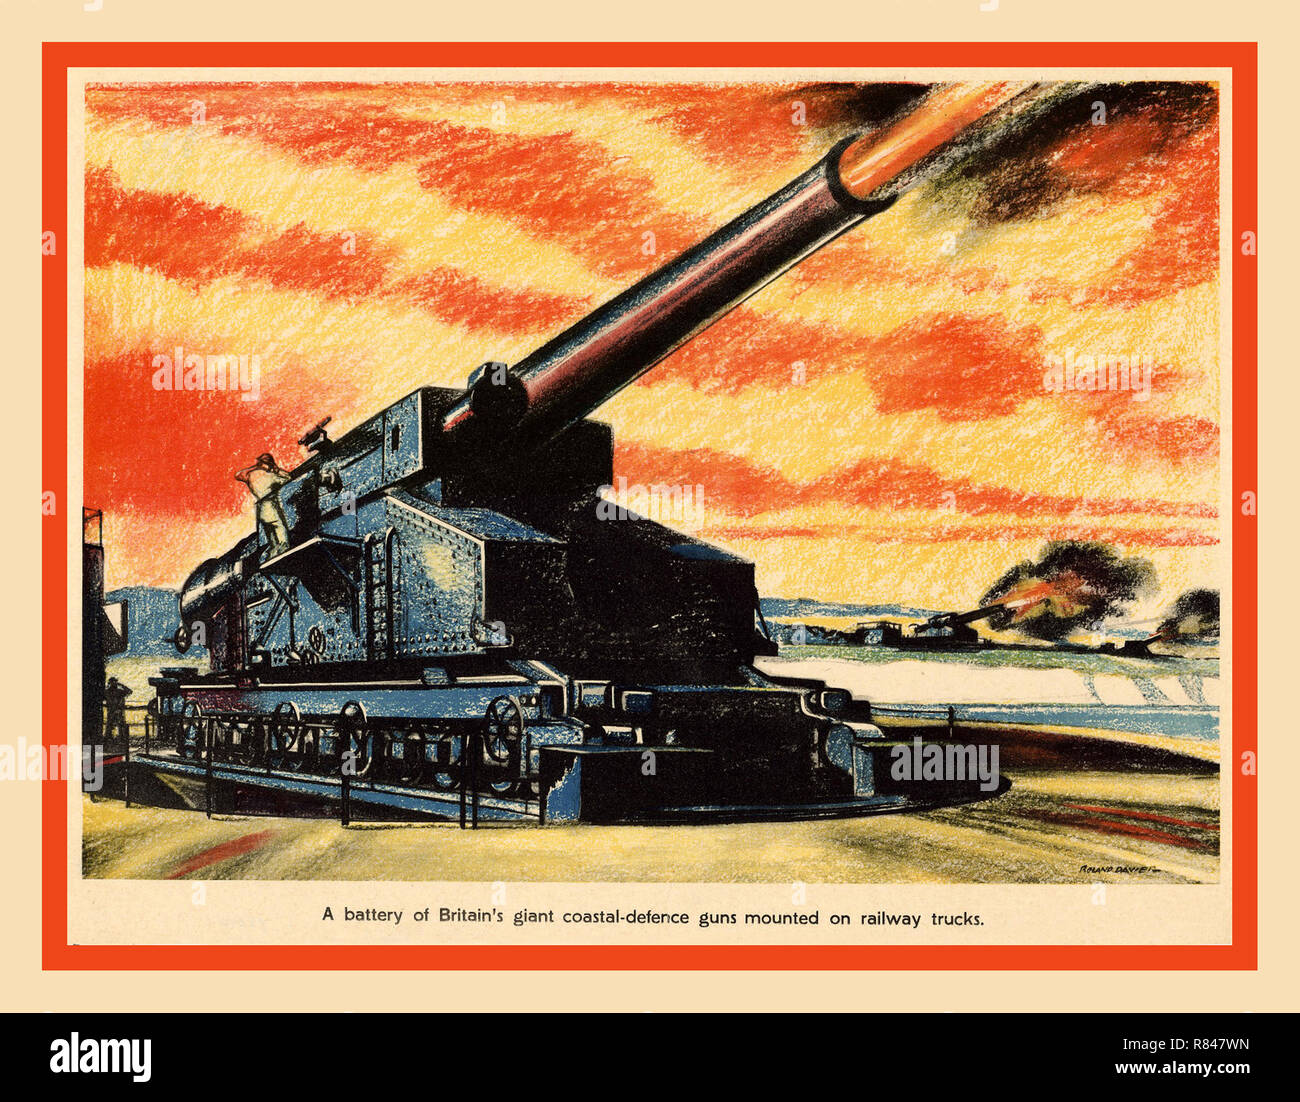 Vintage British WW2 Poster Arte di guerra di propaganda Artwork 1942 una batteria della Gran Bretagna costiera gigante-difesa pistole sparando, montati su carrelli ferroviari Foto Stock